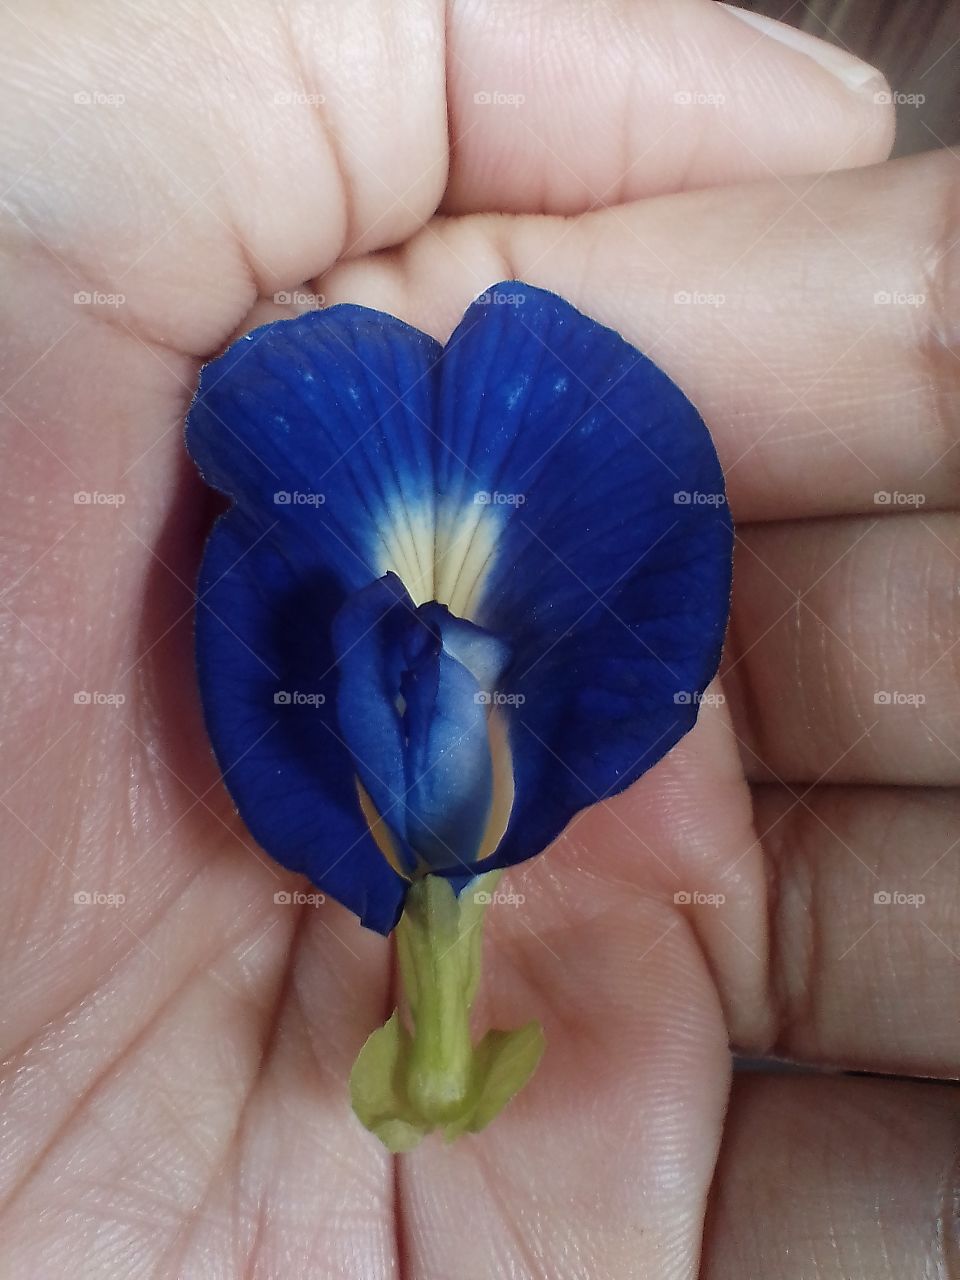 a blue flower is beautiful